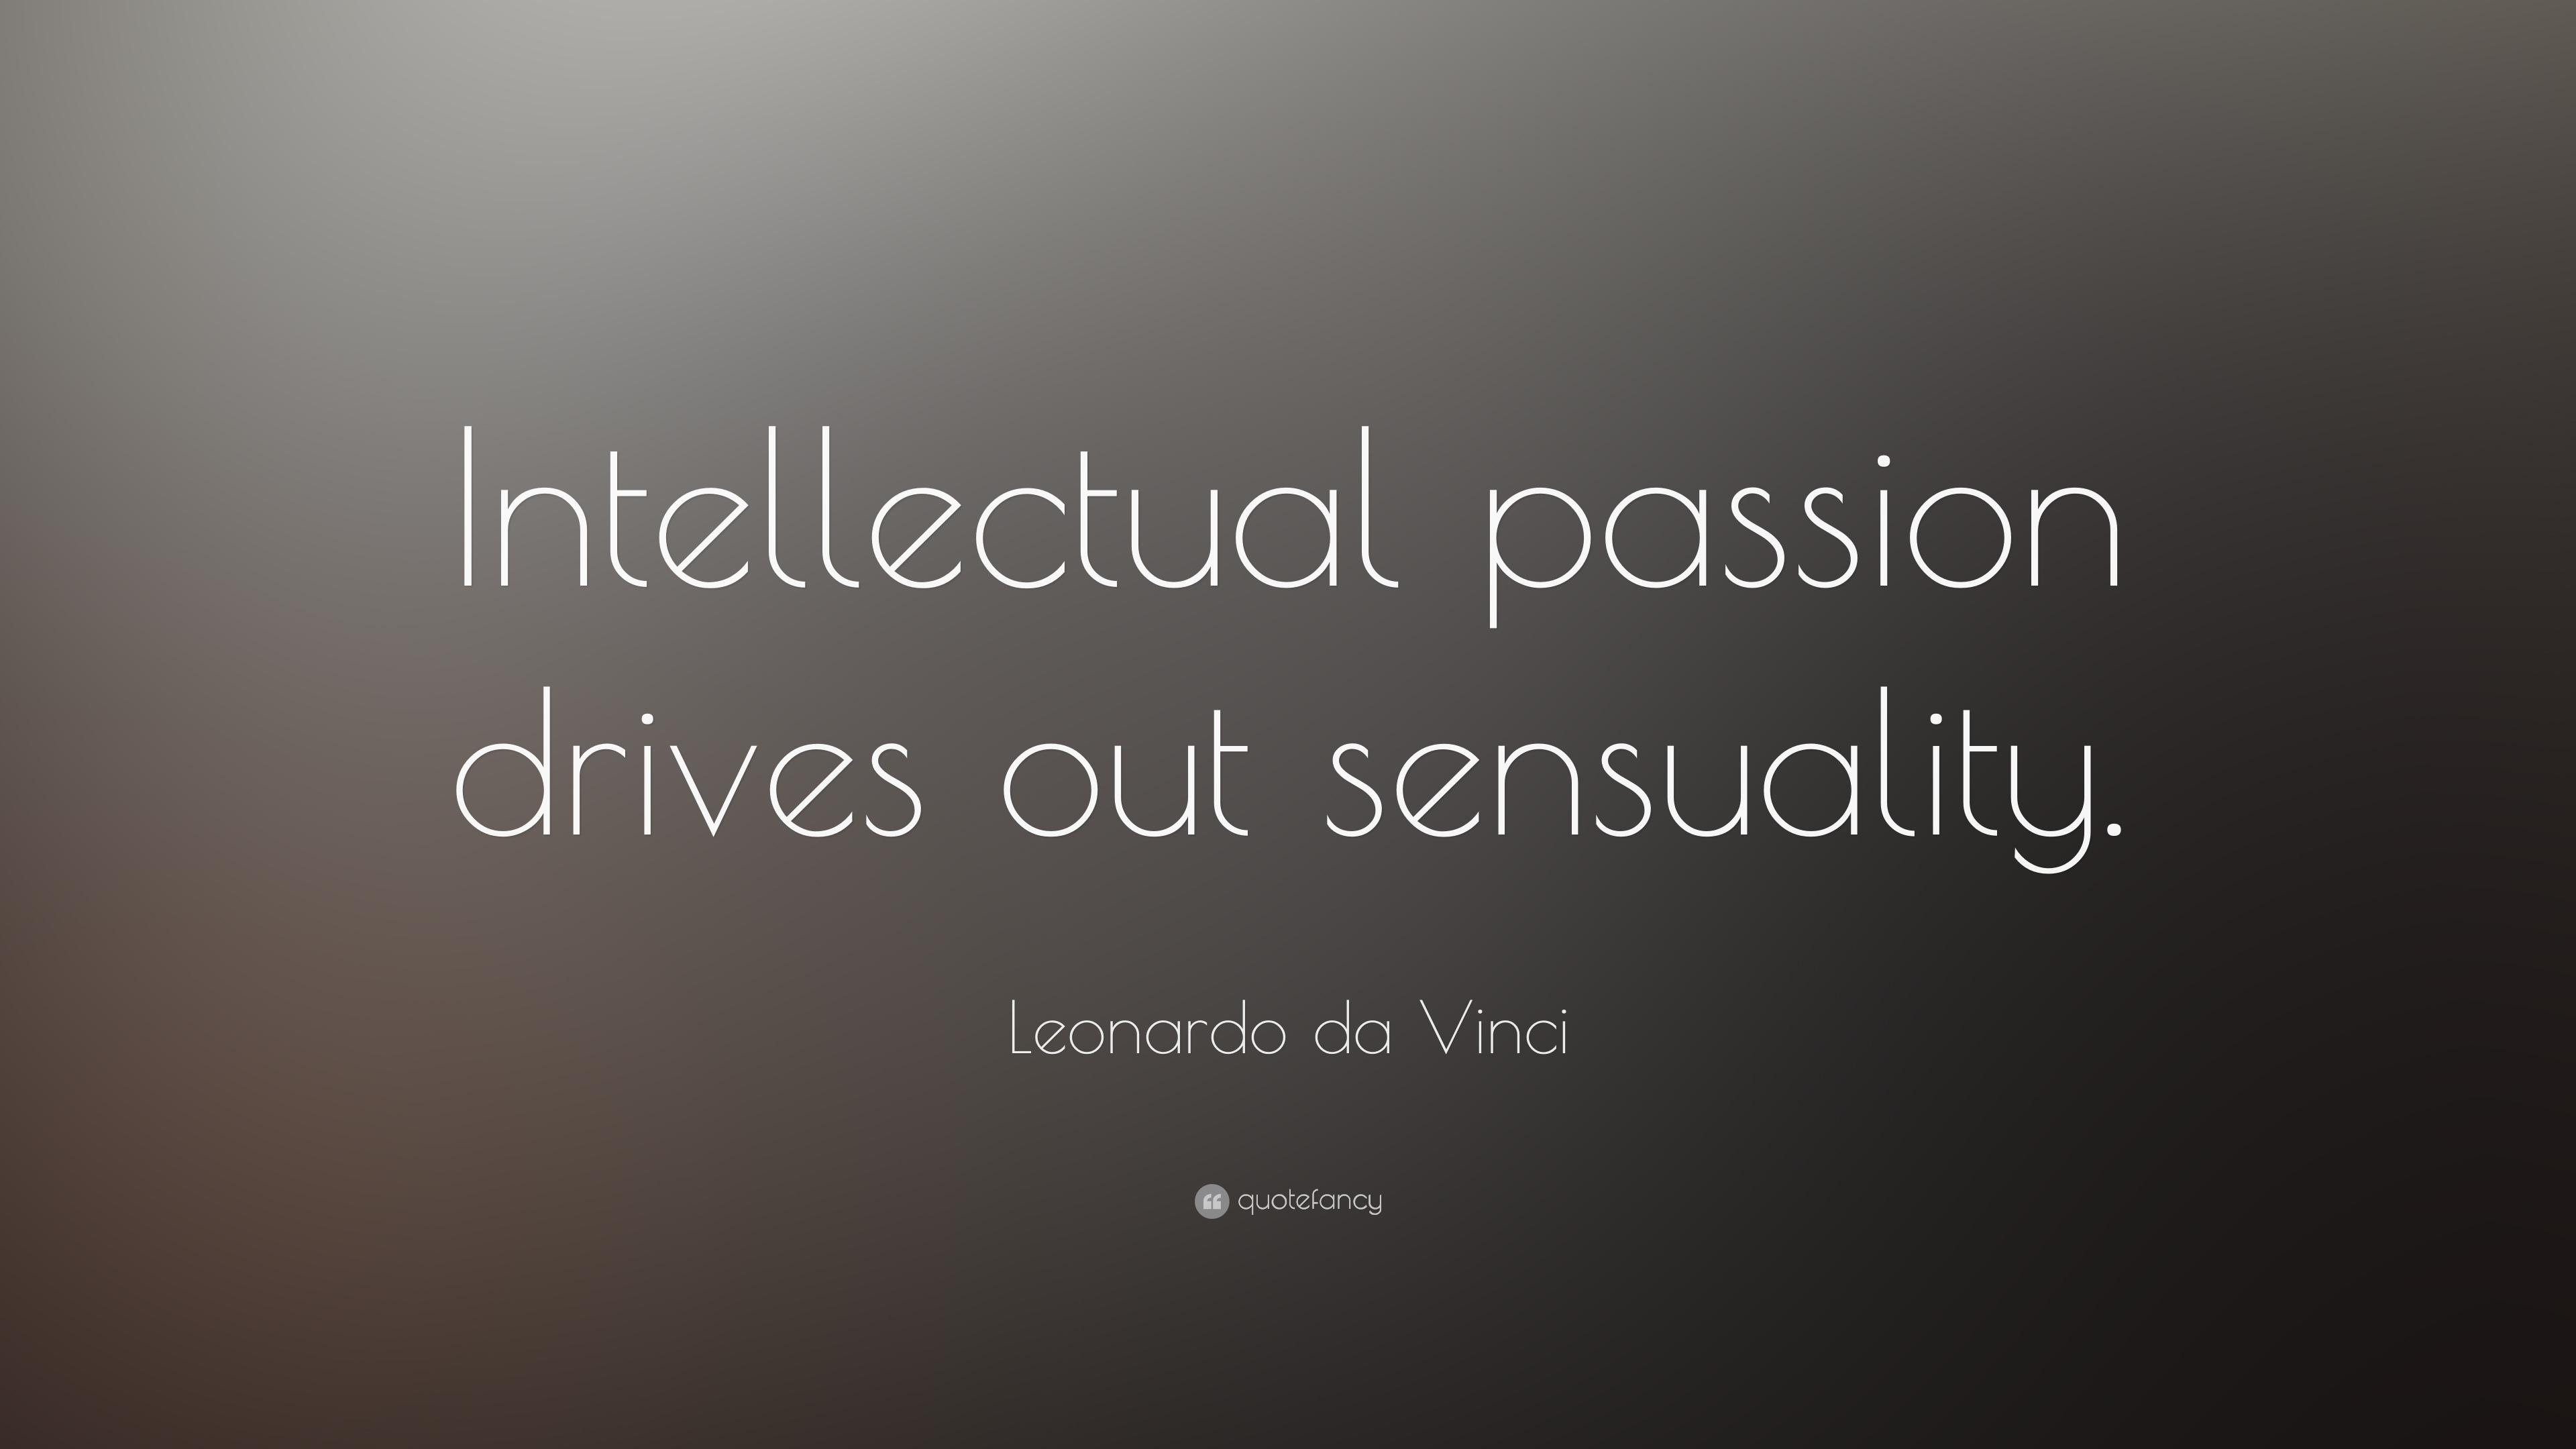 Leonardo da Vinci Quote: “Intellectual passion drives out